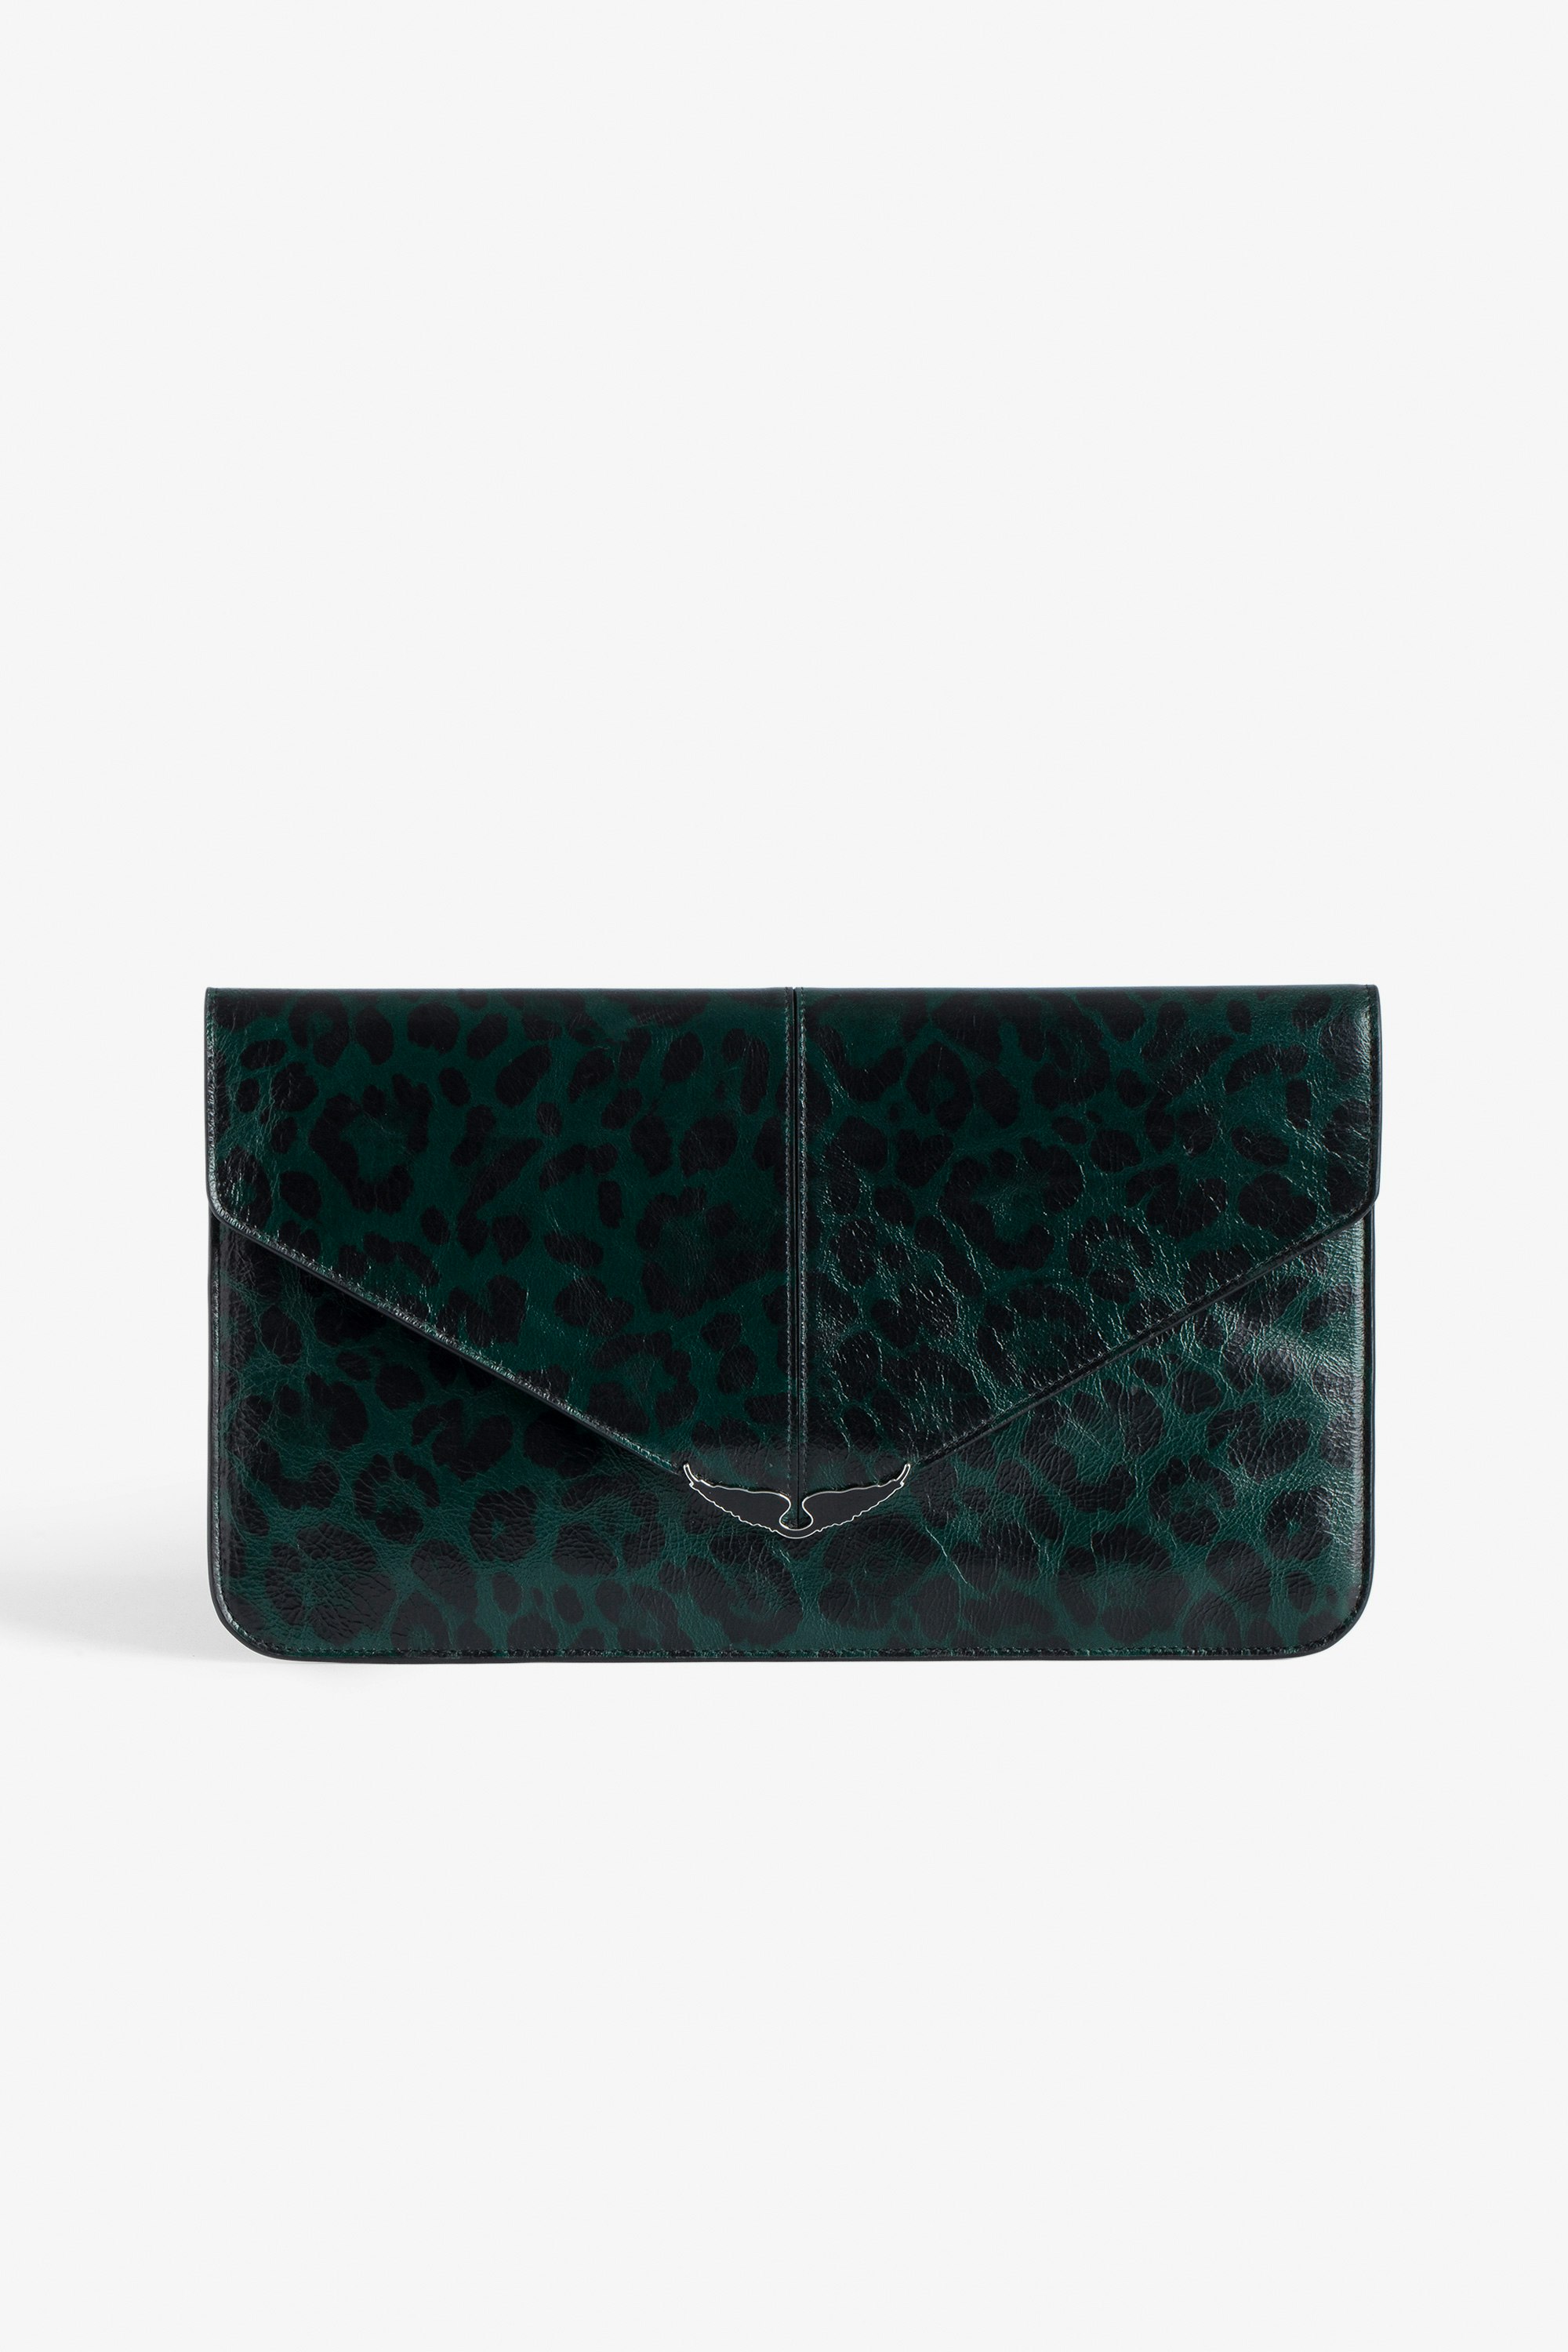 Bolso de mano Borderline Leopardo Bolso verde de mano tipo sobre de charol estampado de leopardo con colgante de alas para mujer.